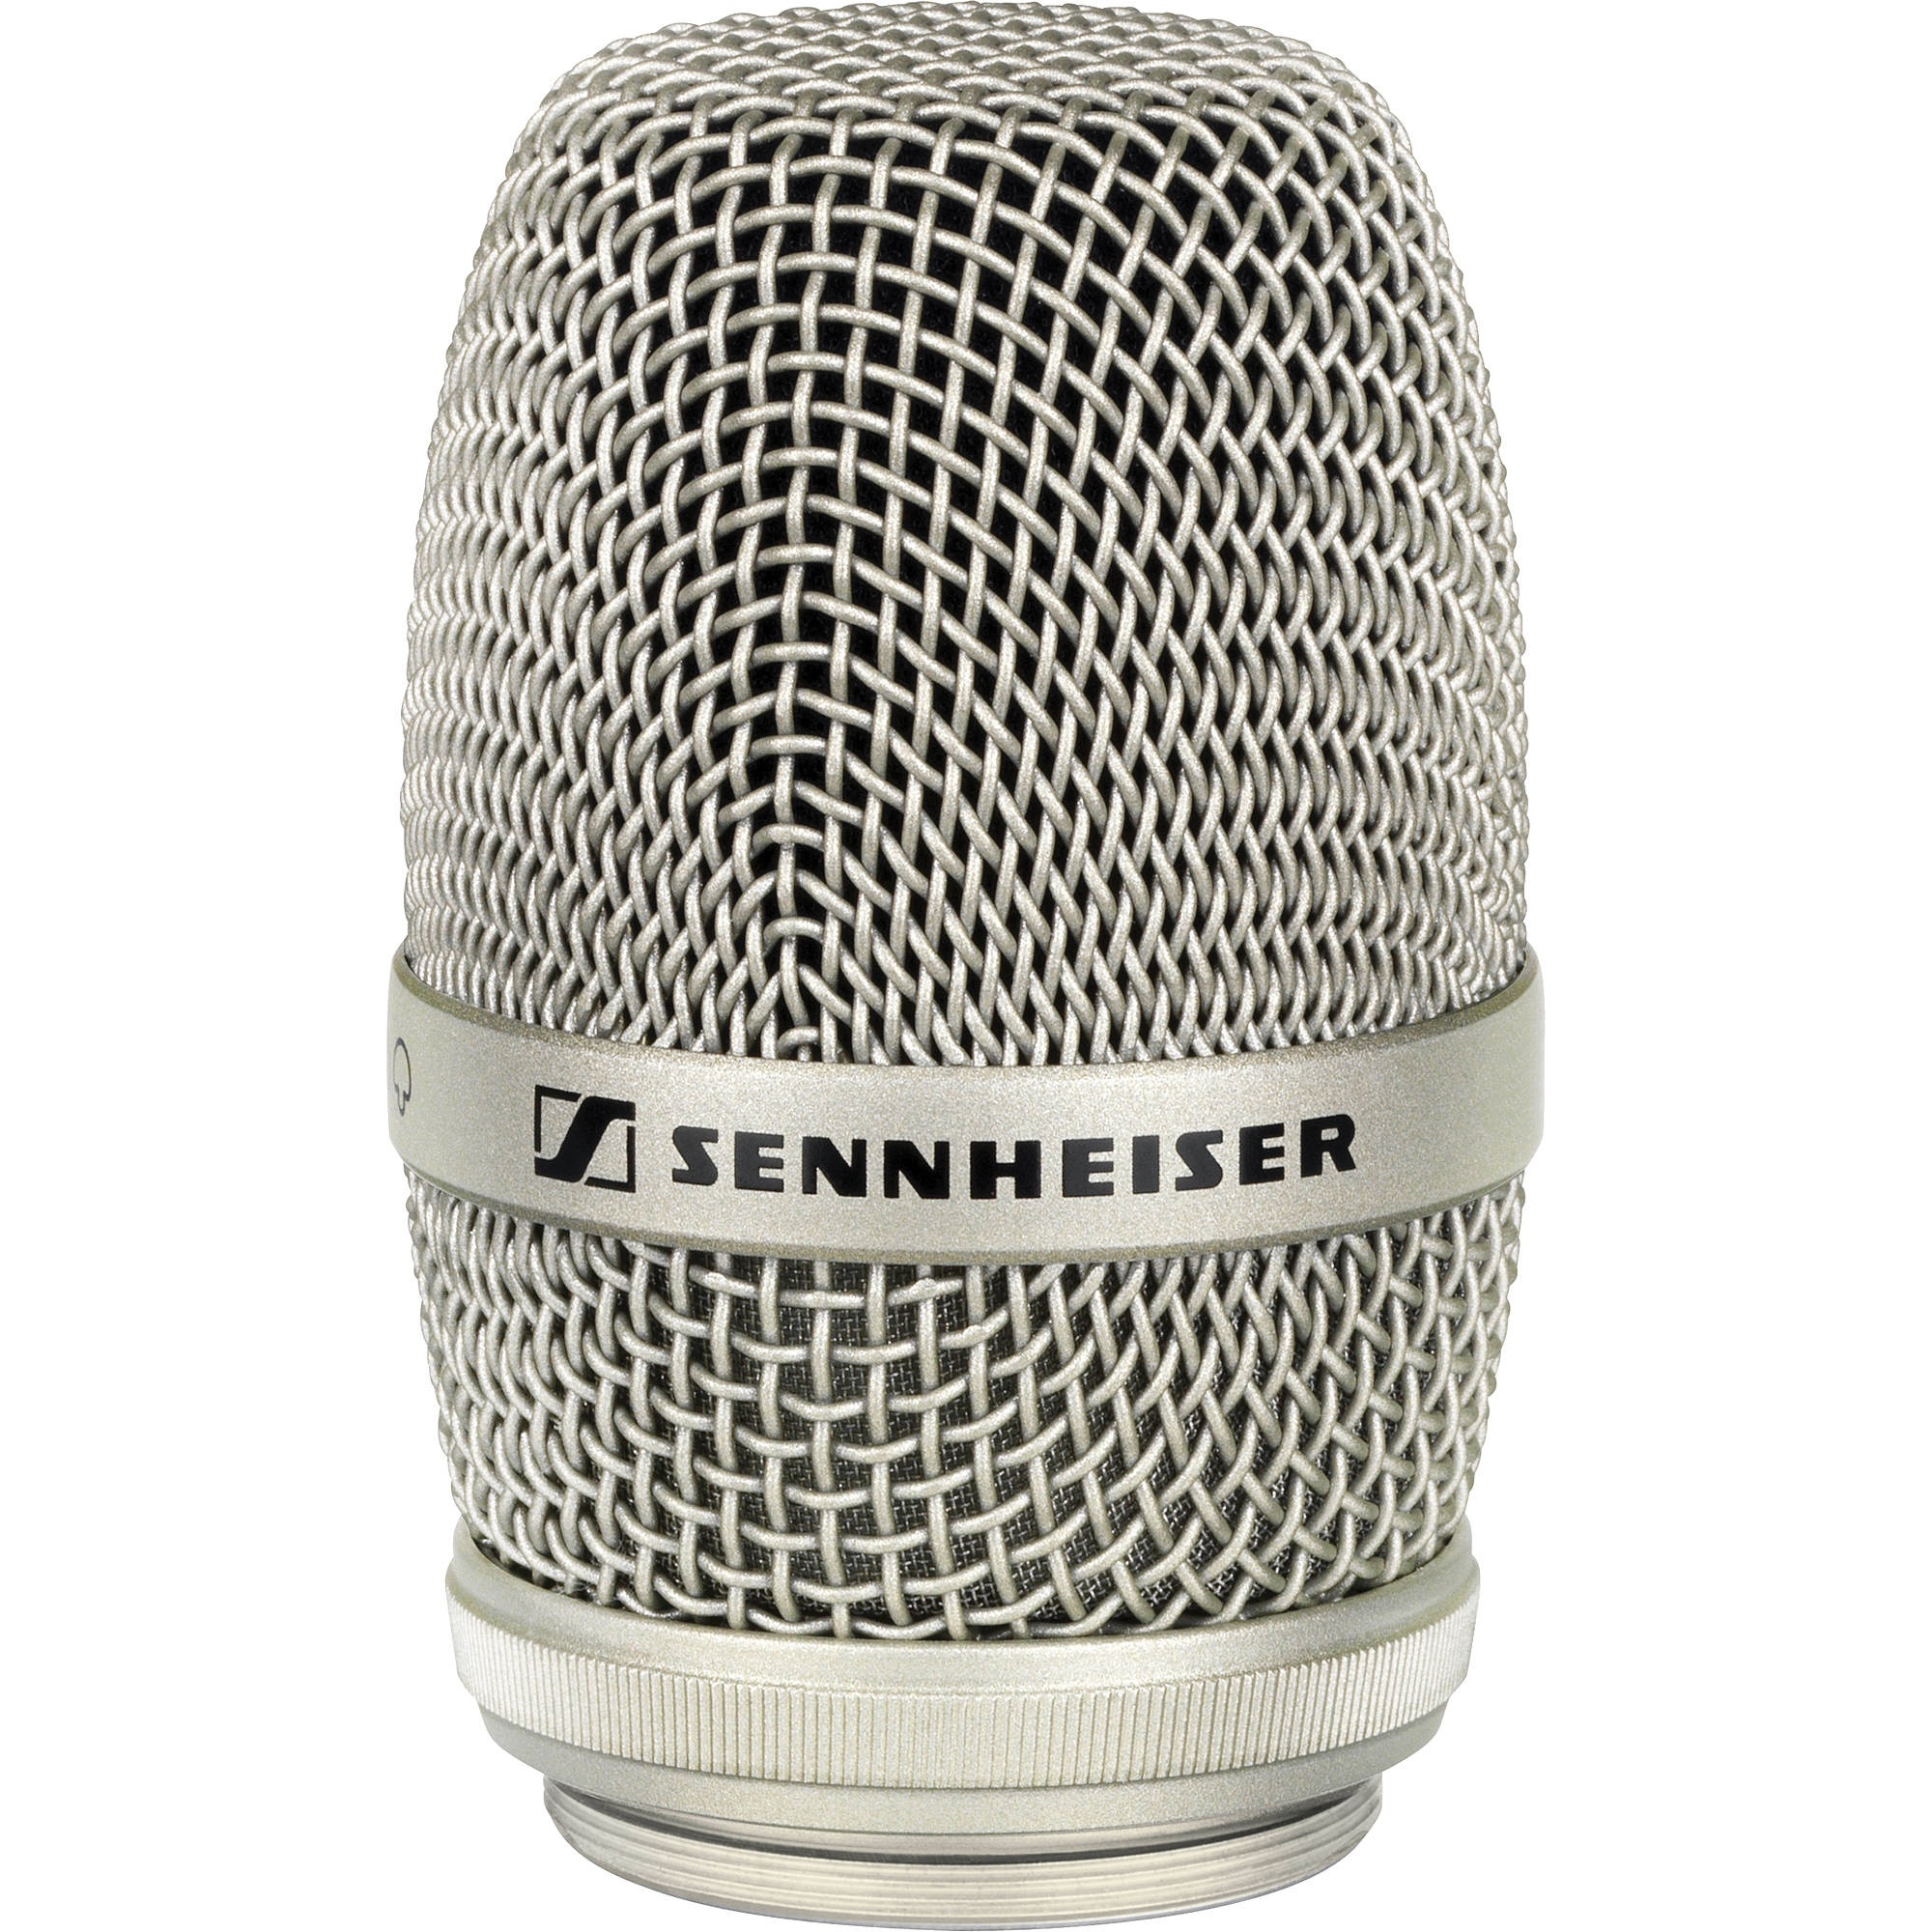 Sennheiser MMK 965-1 Condenser Microphone Module (Nickel)